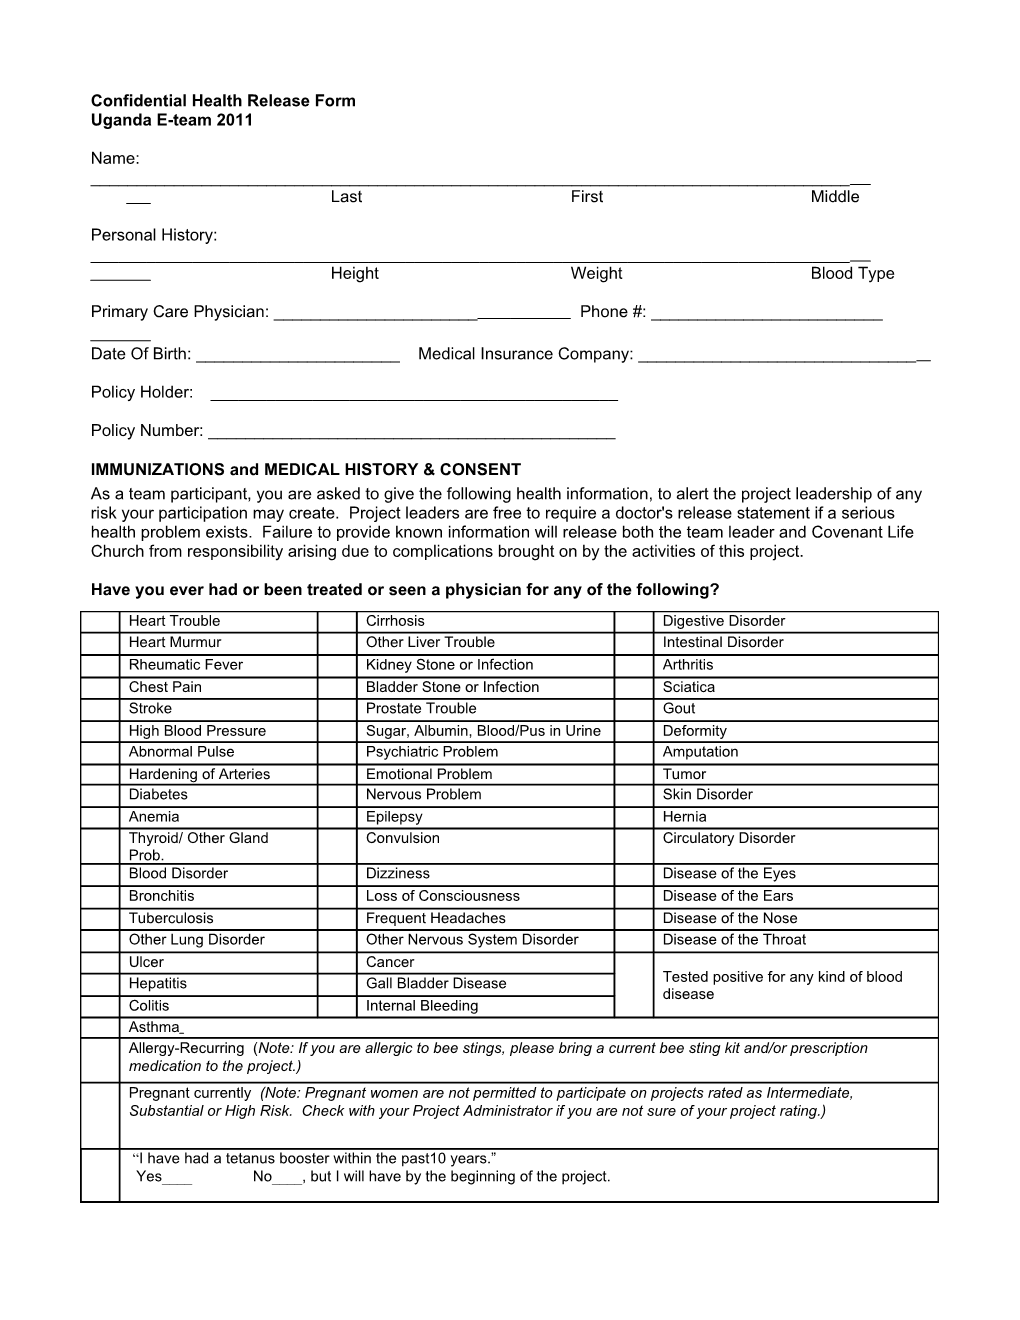 E-Team Application Form s1